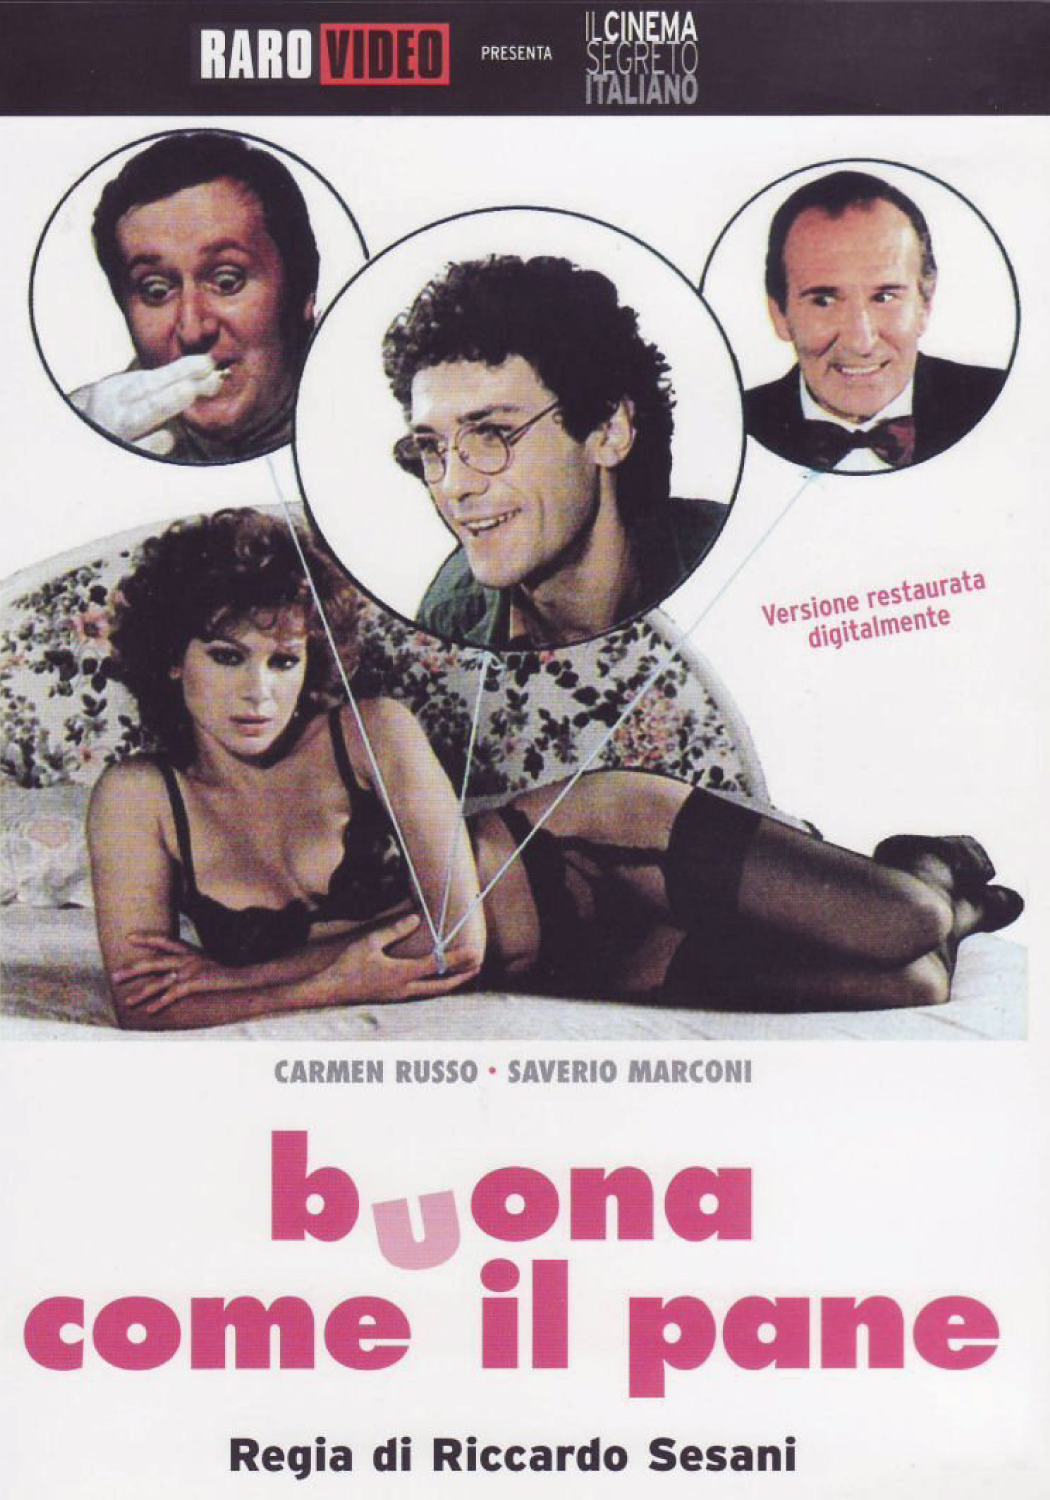 Buona come il pane (1982) Screenshot 4